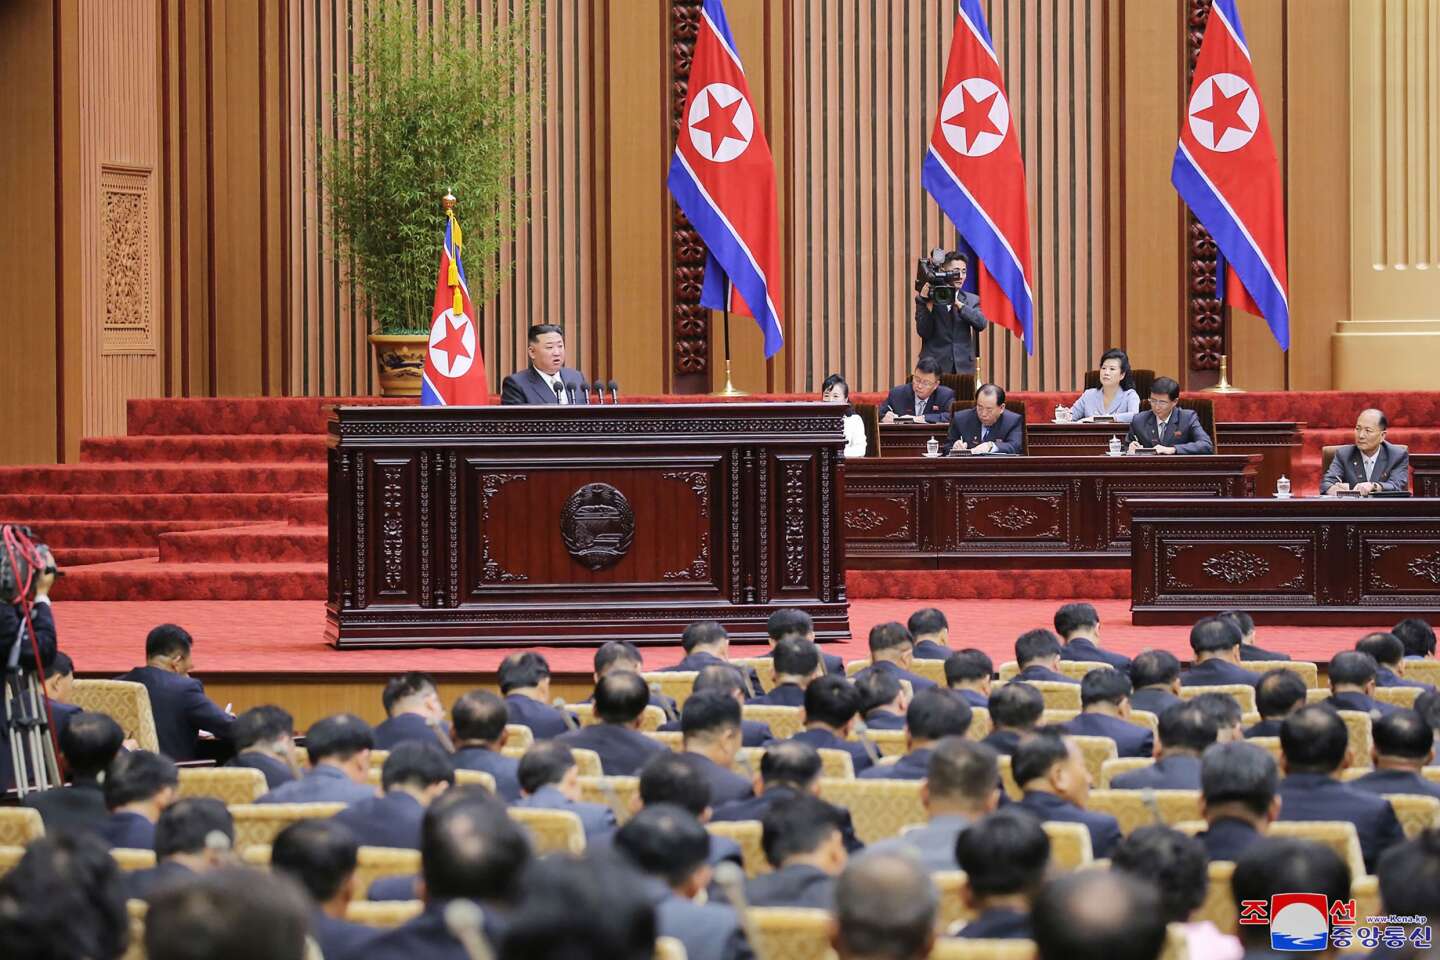 La nouvelle doctrine nucléaire de la Corée du Nord inquiète les analystes